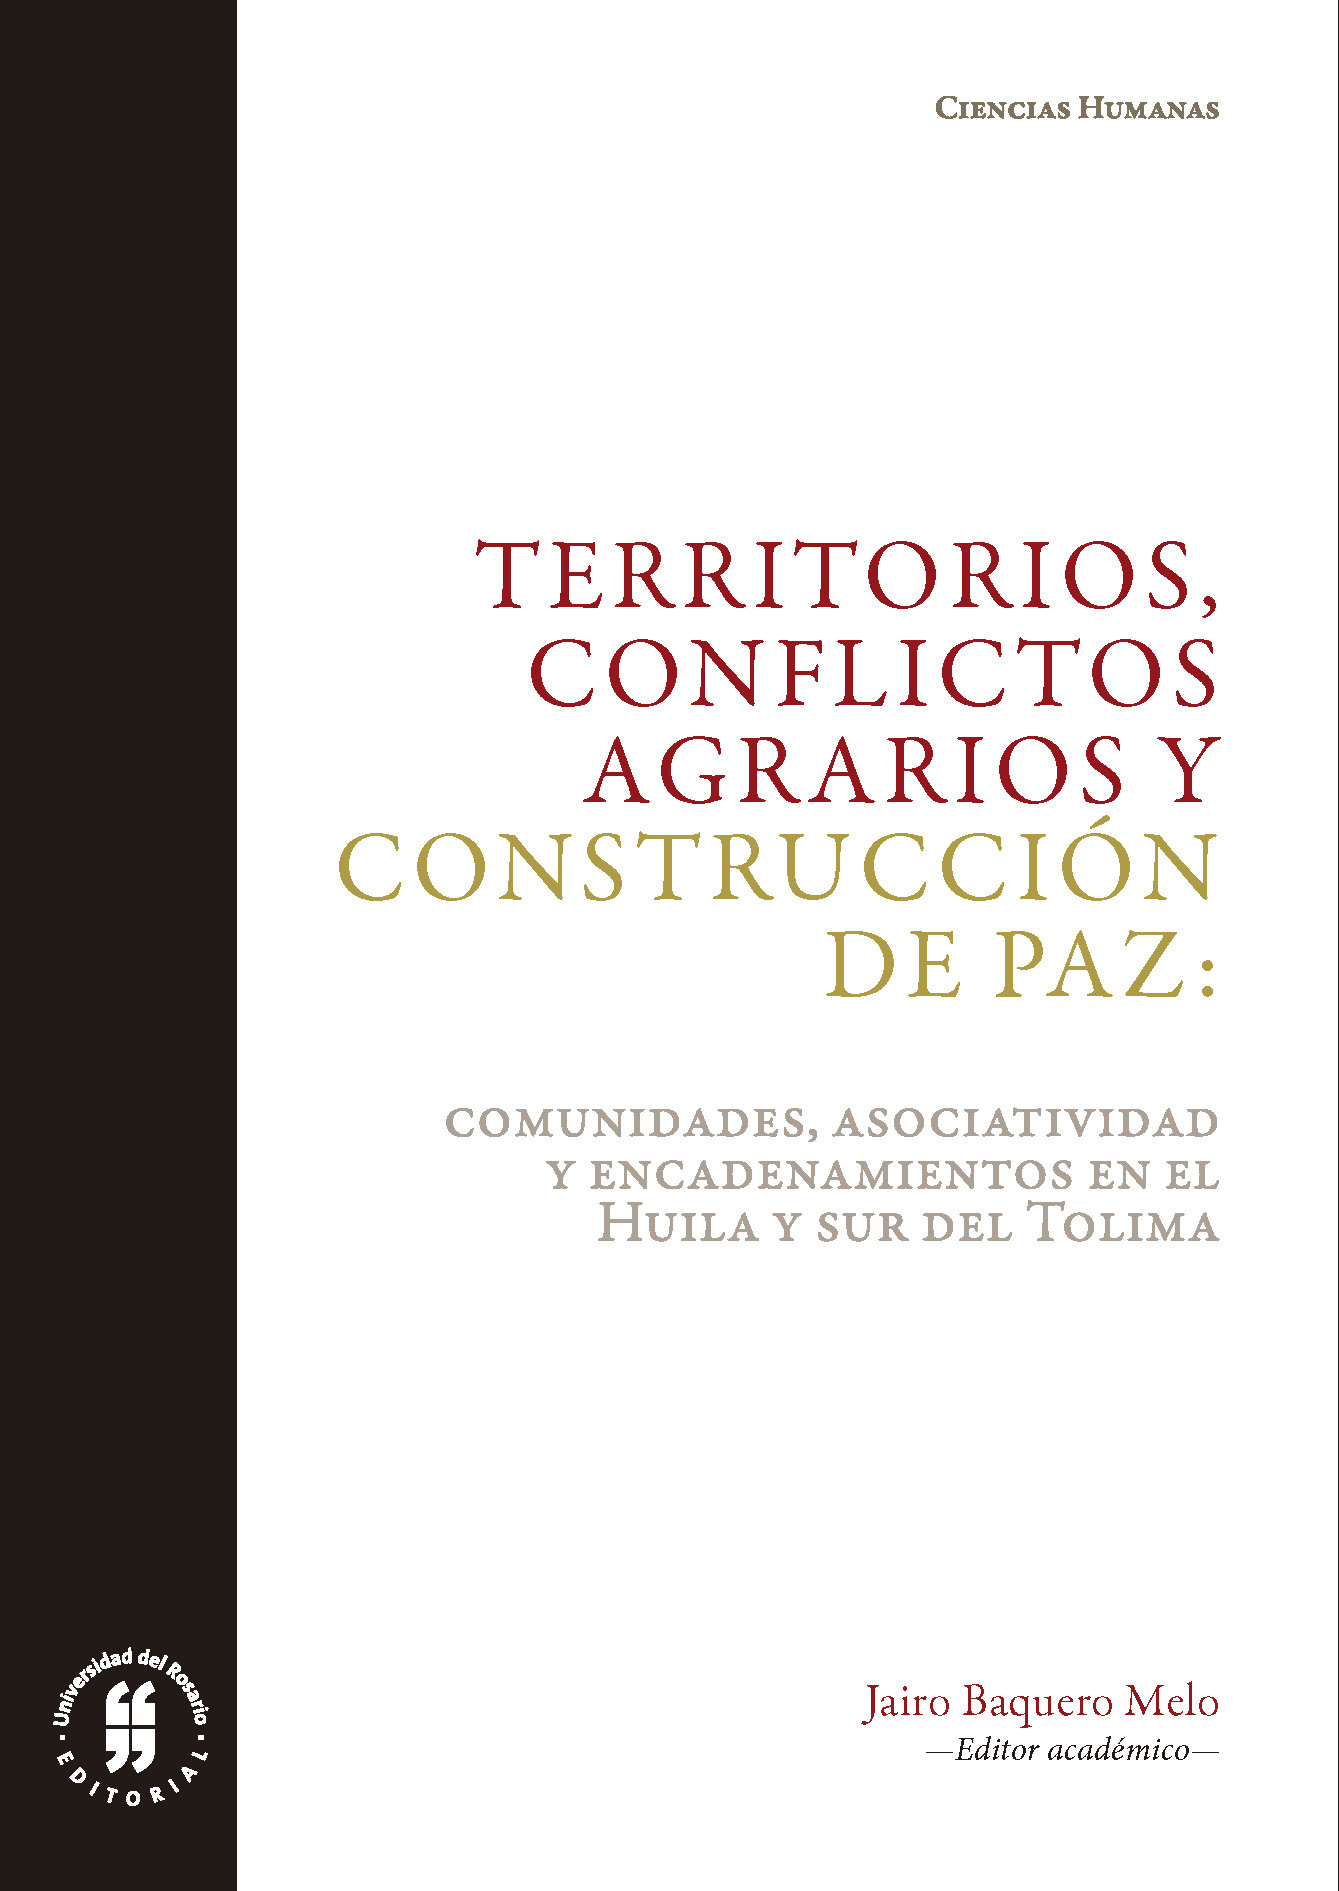 Imagen de portada del libro Territorios, conflictos agrarios y construcción de paz: comunidades, asociatividad y encadenamientos en el Huila y sur del Tolima